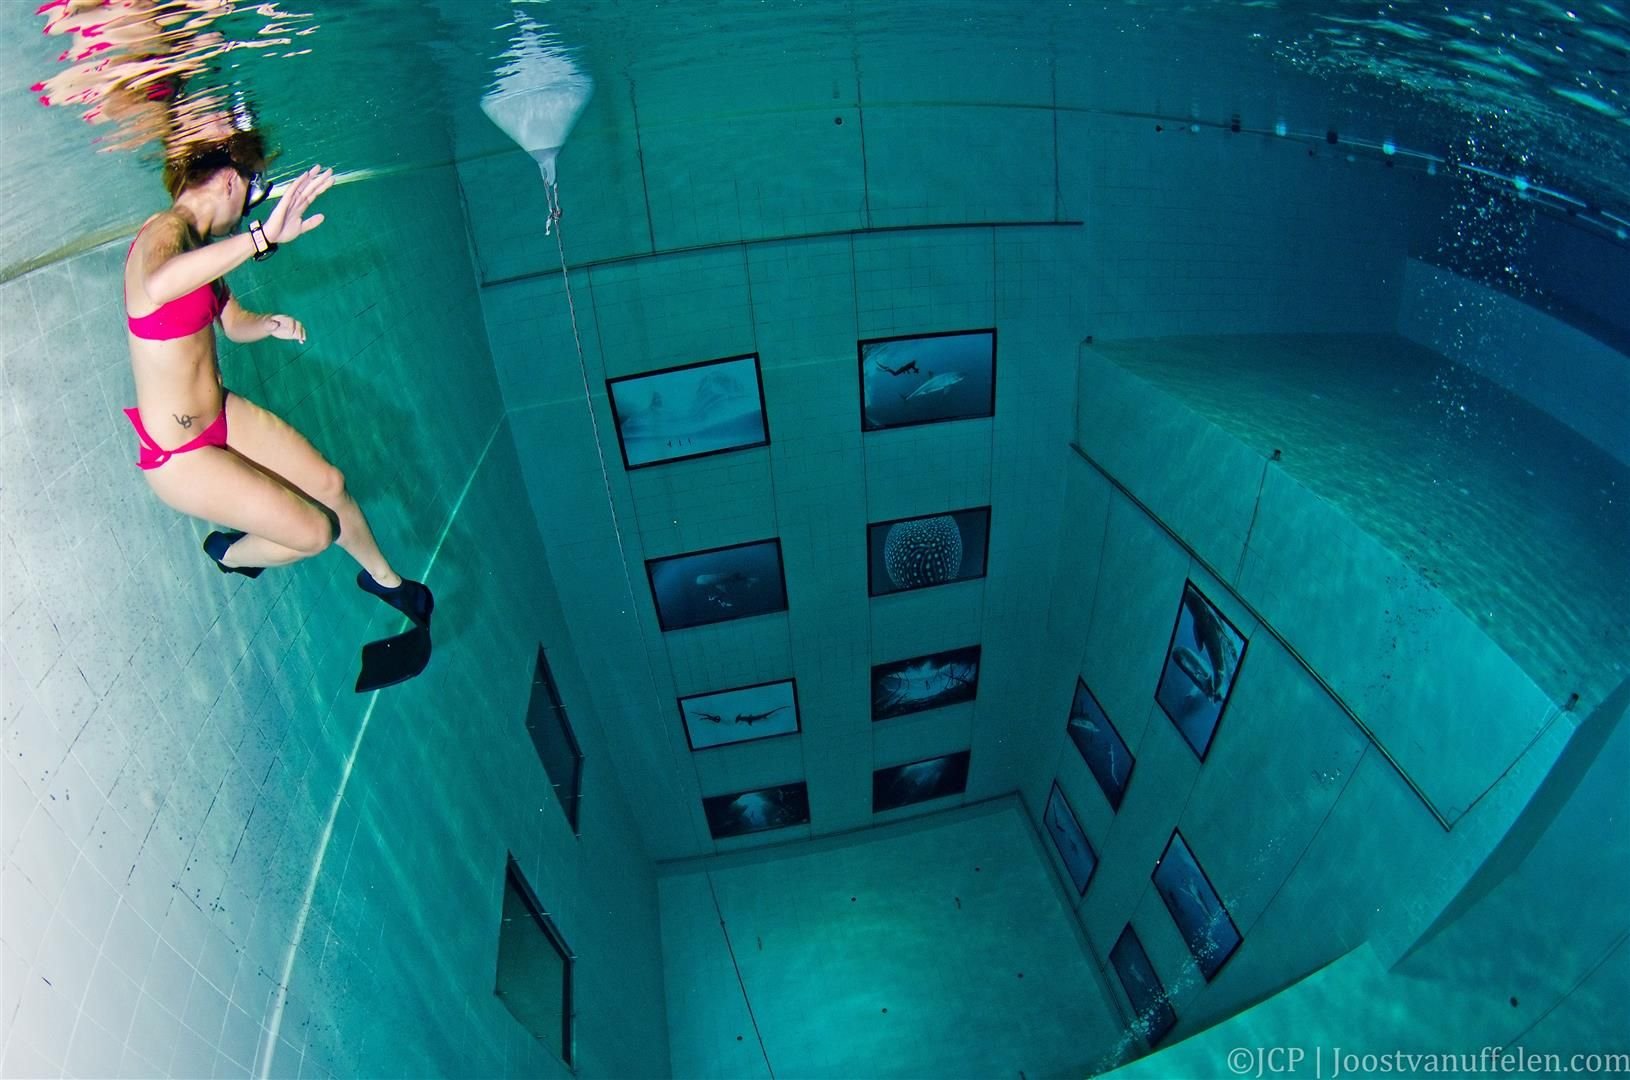 Жуткий бассейн. Самый глубокий бассейн в мире Немо 33. Бассейн Немо 33 Бельгия. Немо 33 бассейн глубина. Фридайвер самый глубокий бассейн в мире.